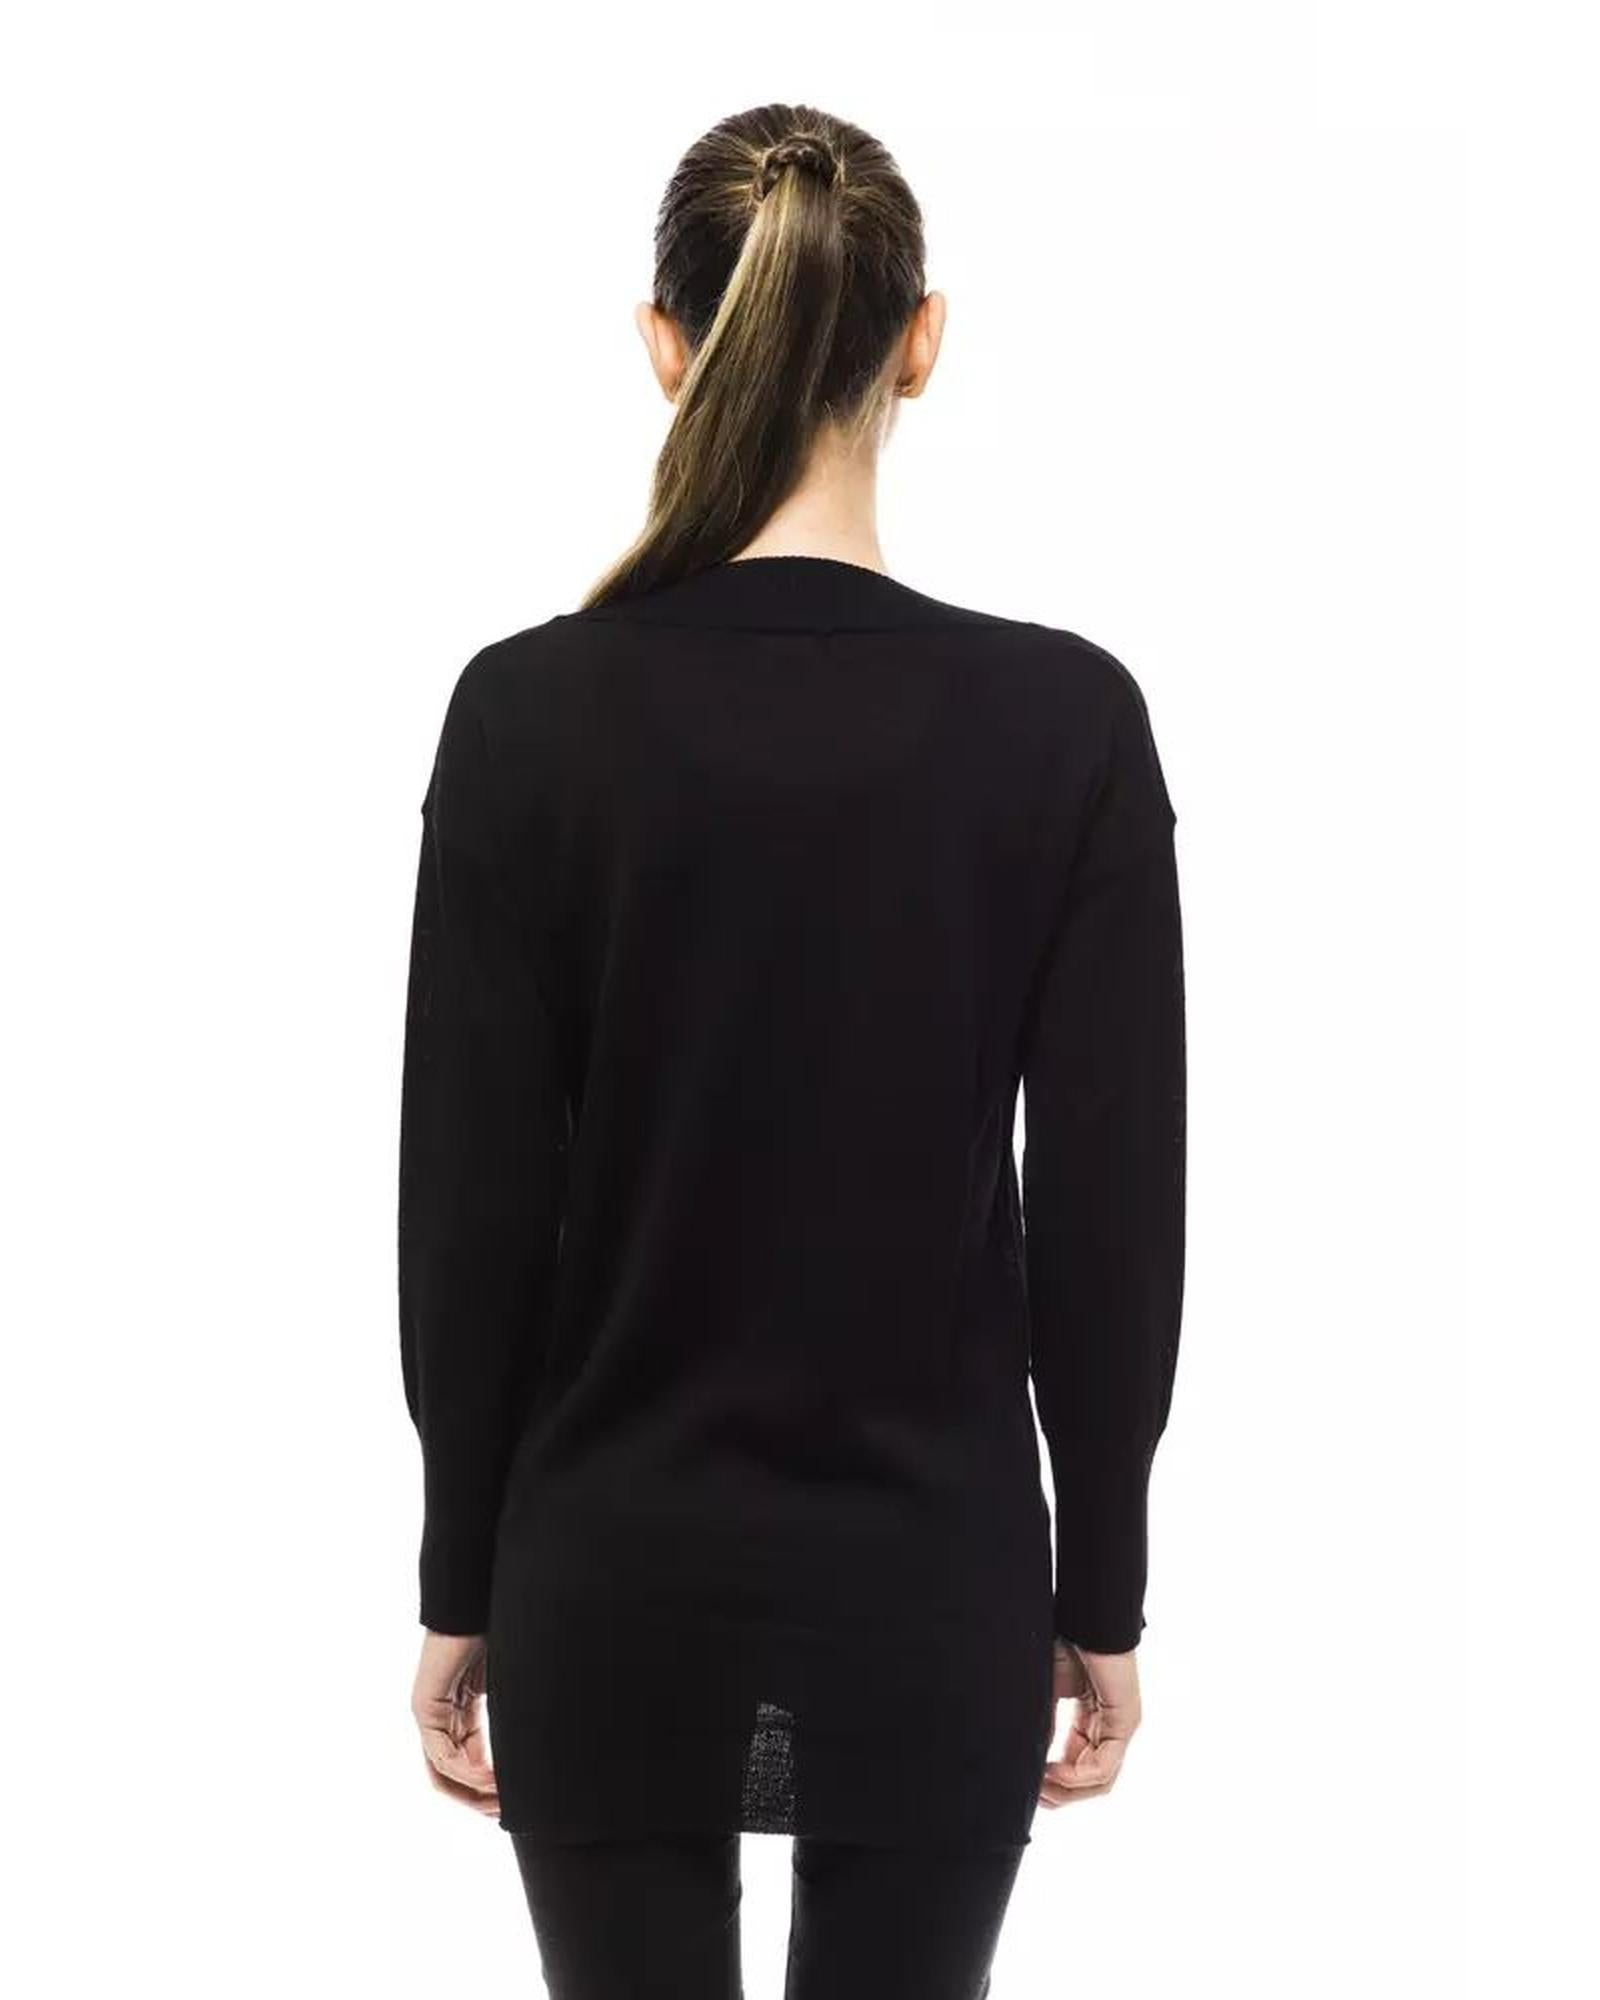 Women's Black Wool Sweater - 46 IT